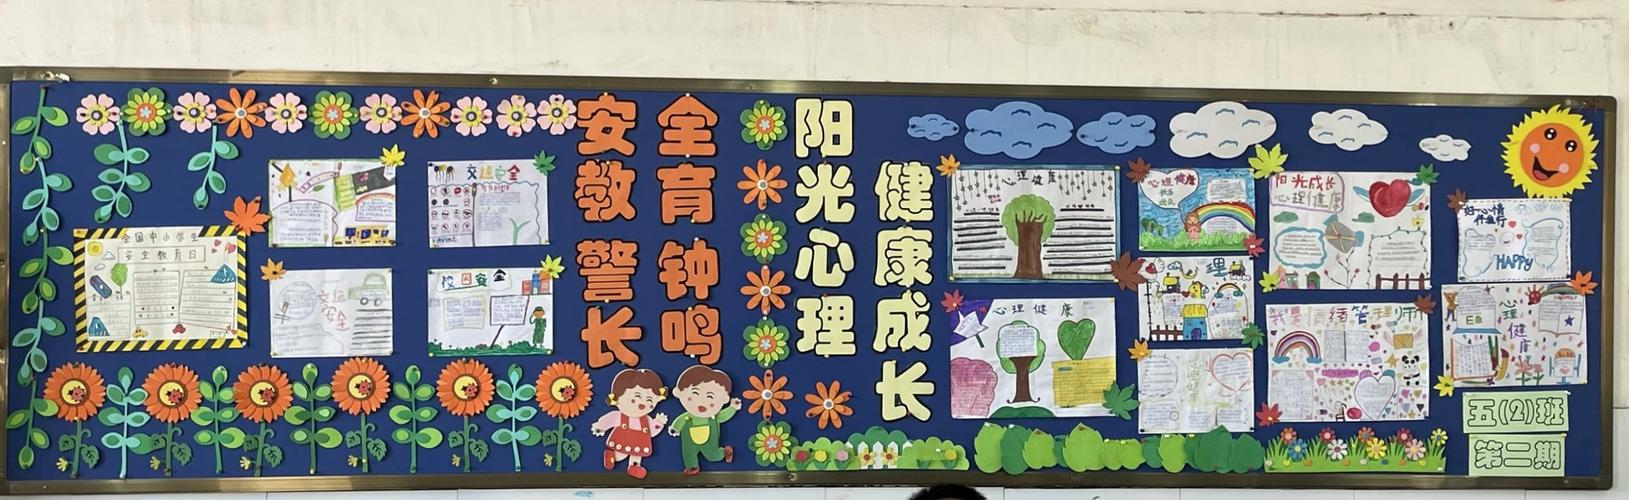 阳光心理 健康成长武汉市张家铺学校开展黑板报评比活动